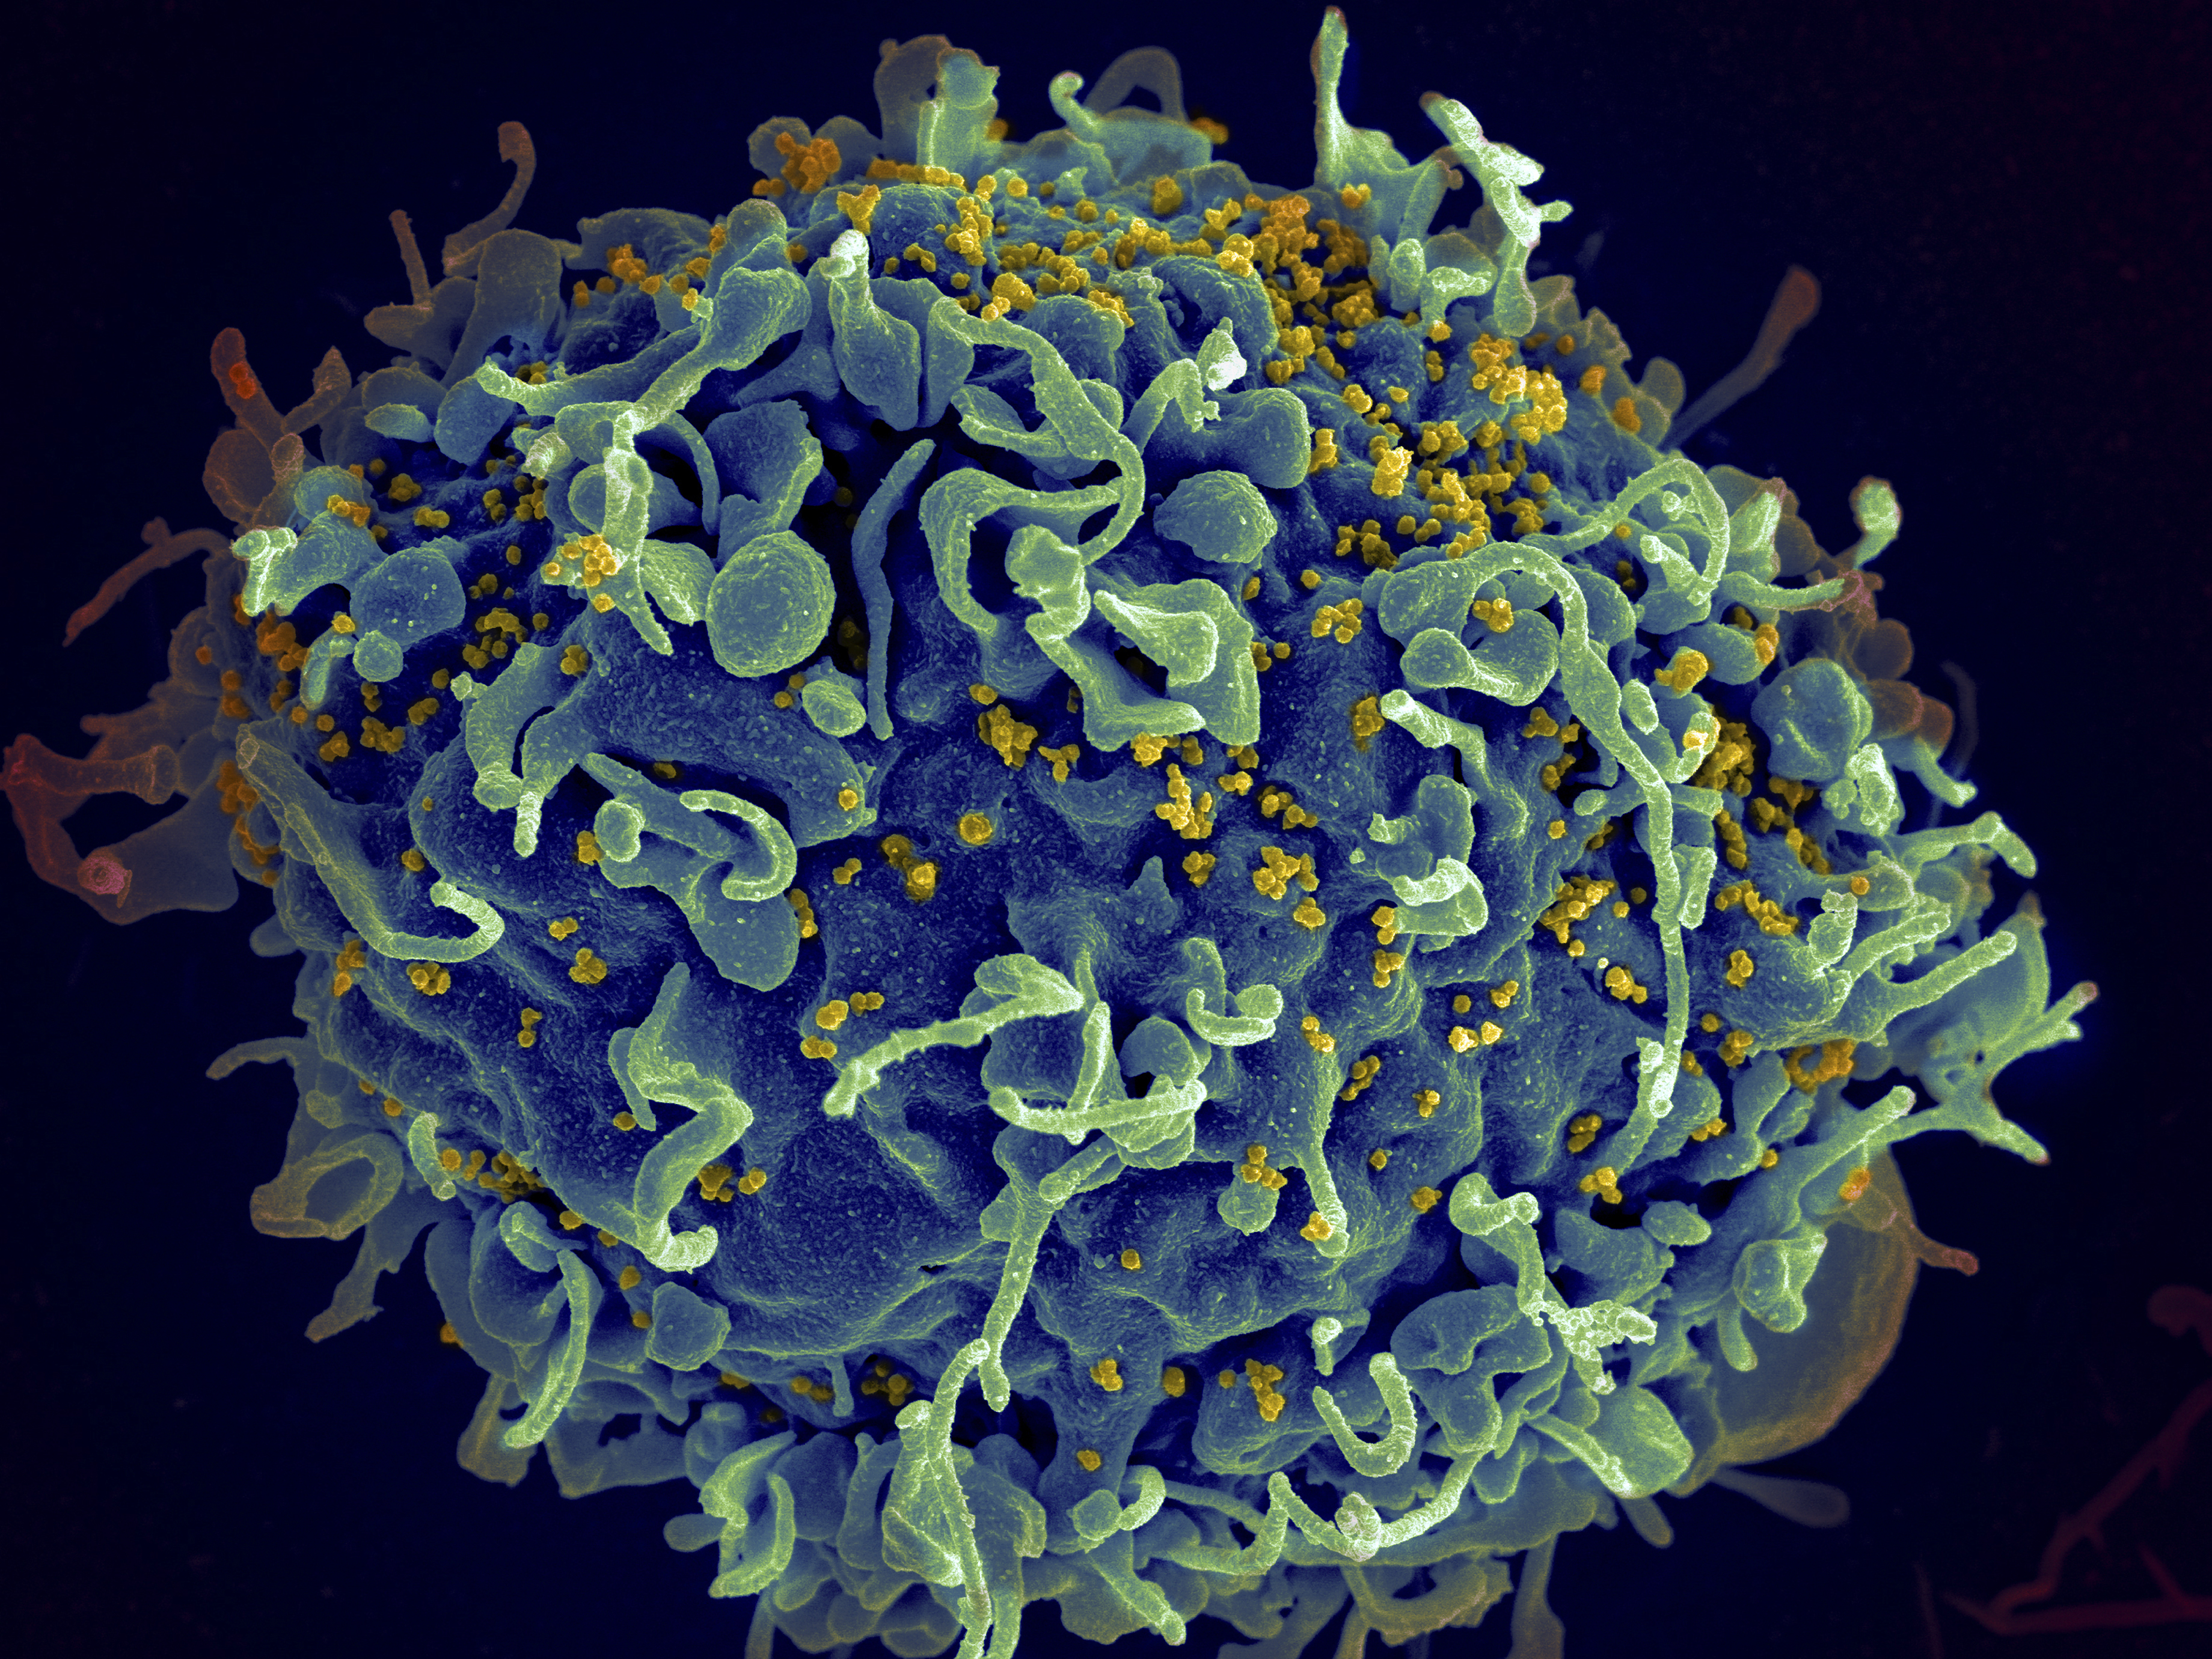 Elektronenmikroskop Aufnahme von HIV auf der Oberfläche einer menschlichen Immunzelle